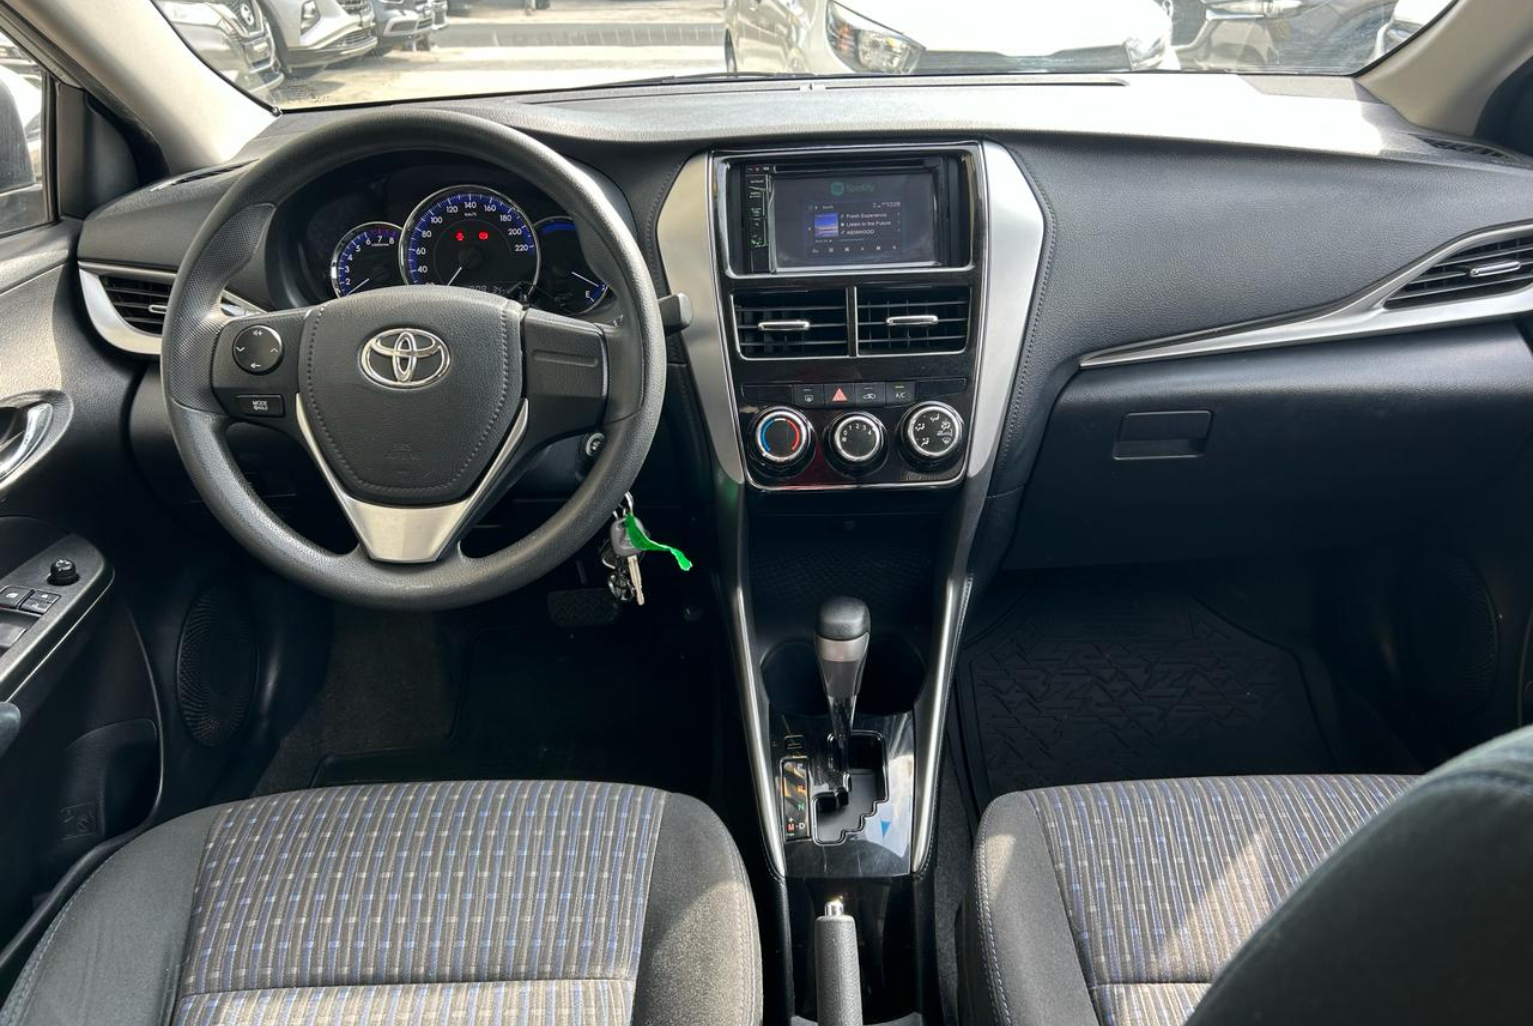 Toyota Yaris 2018 Automático color Plateado, Imagen #9